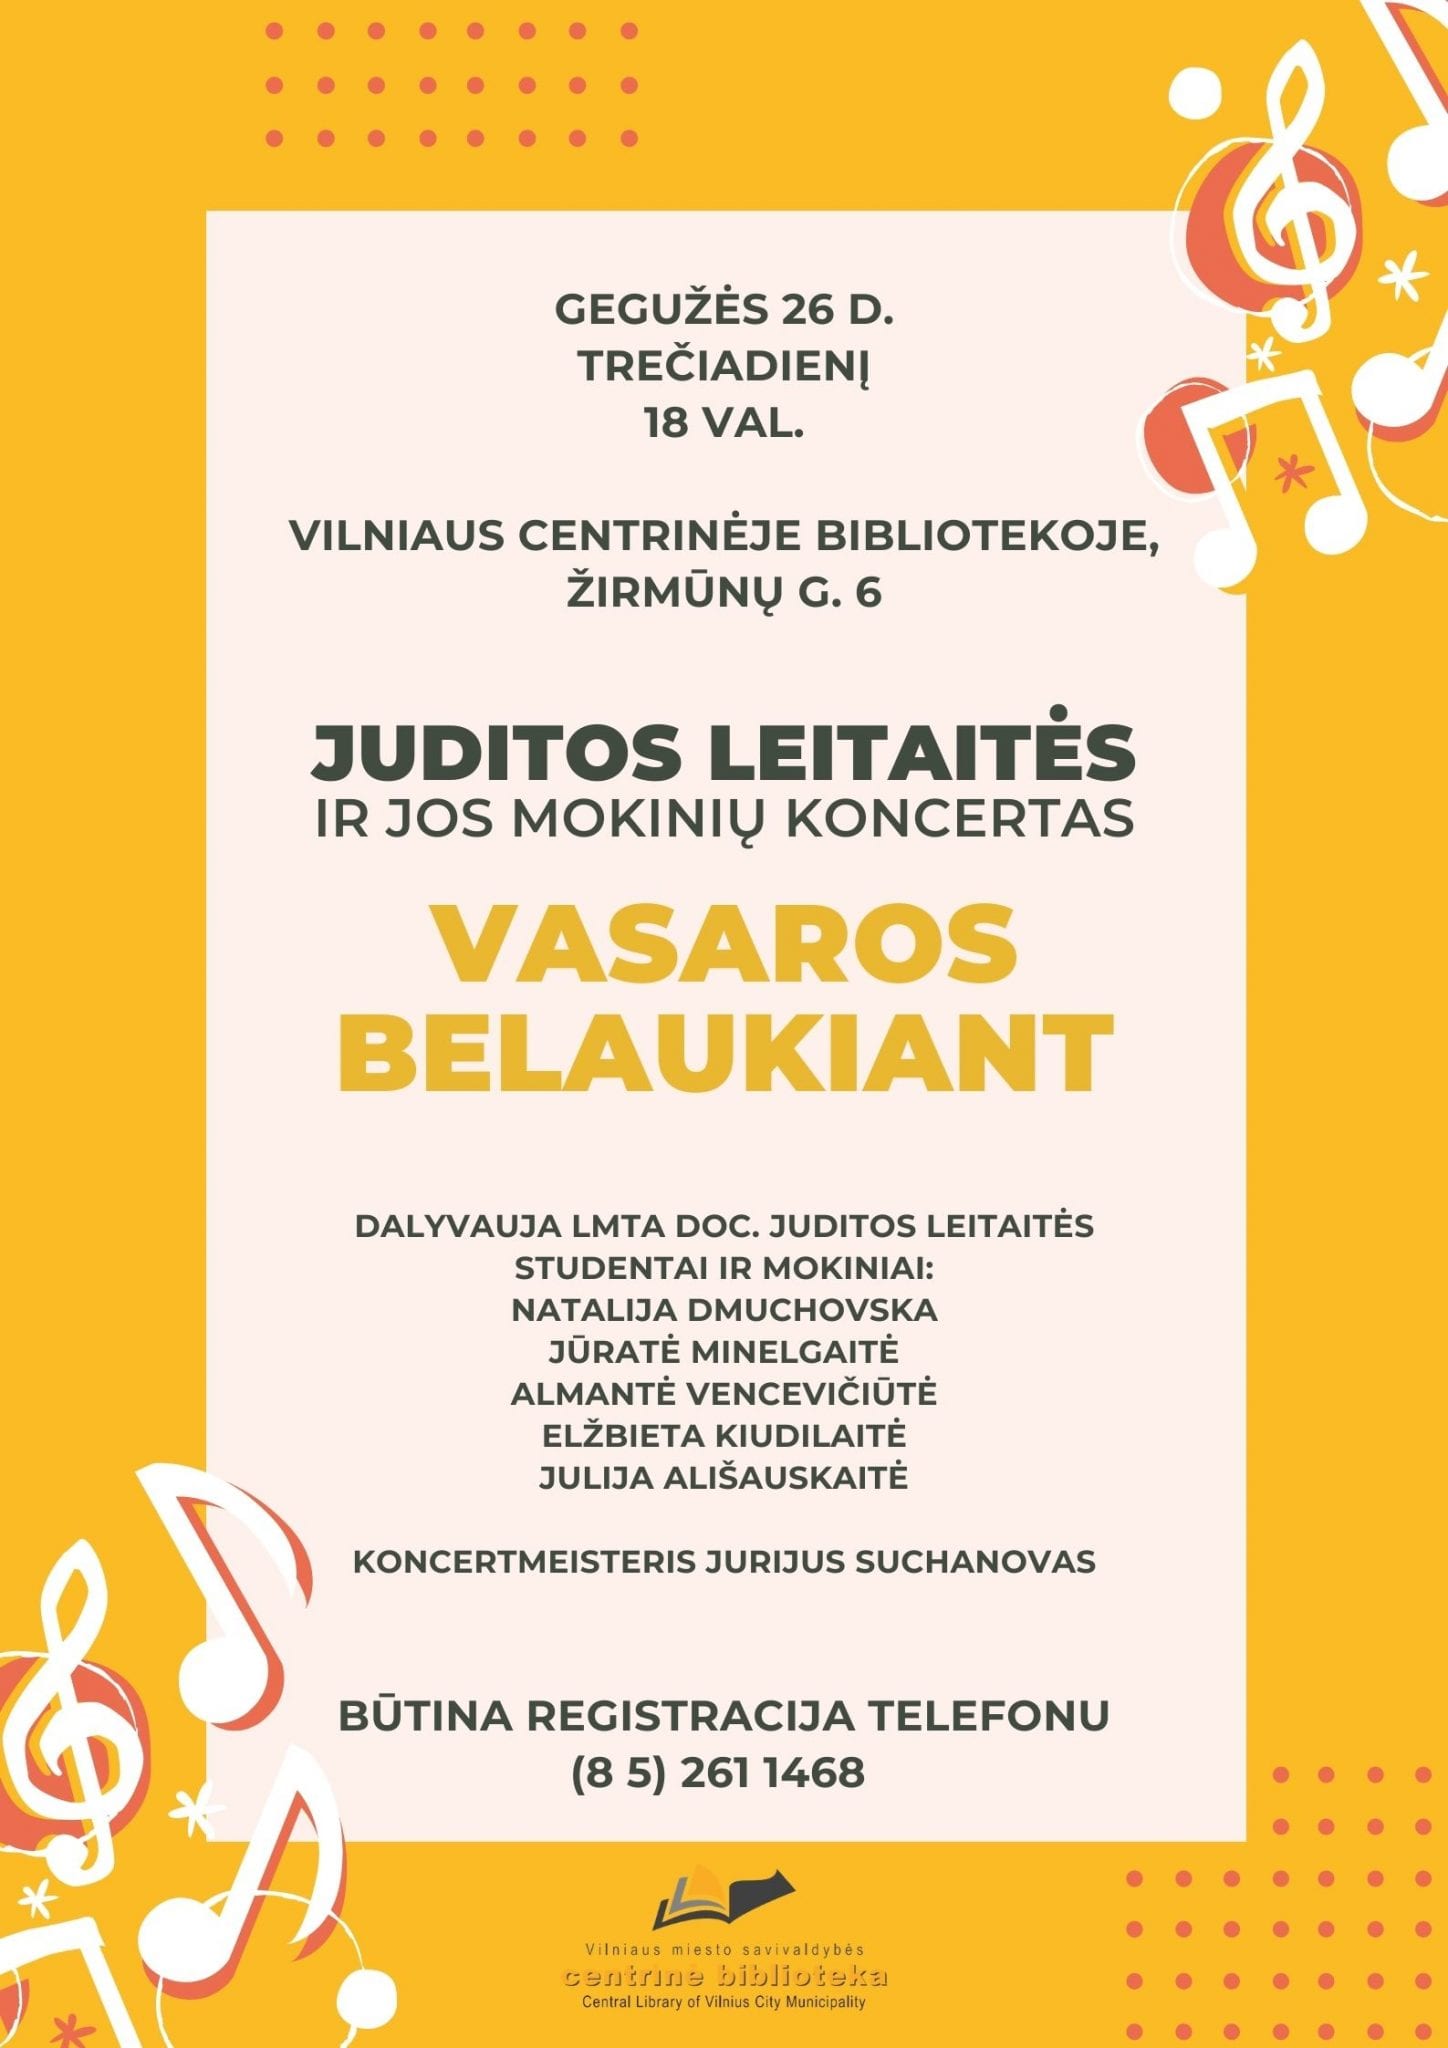 Juditos Leitaitės koncertas